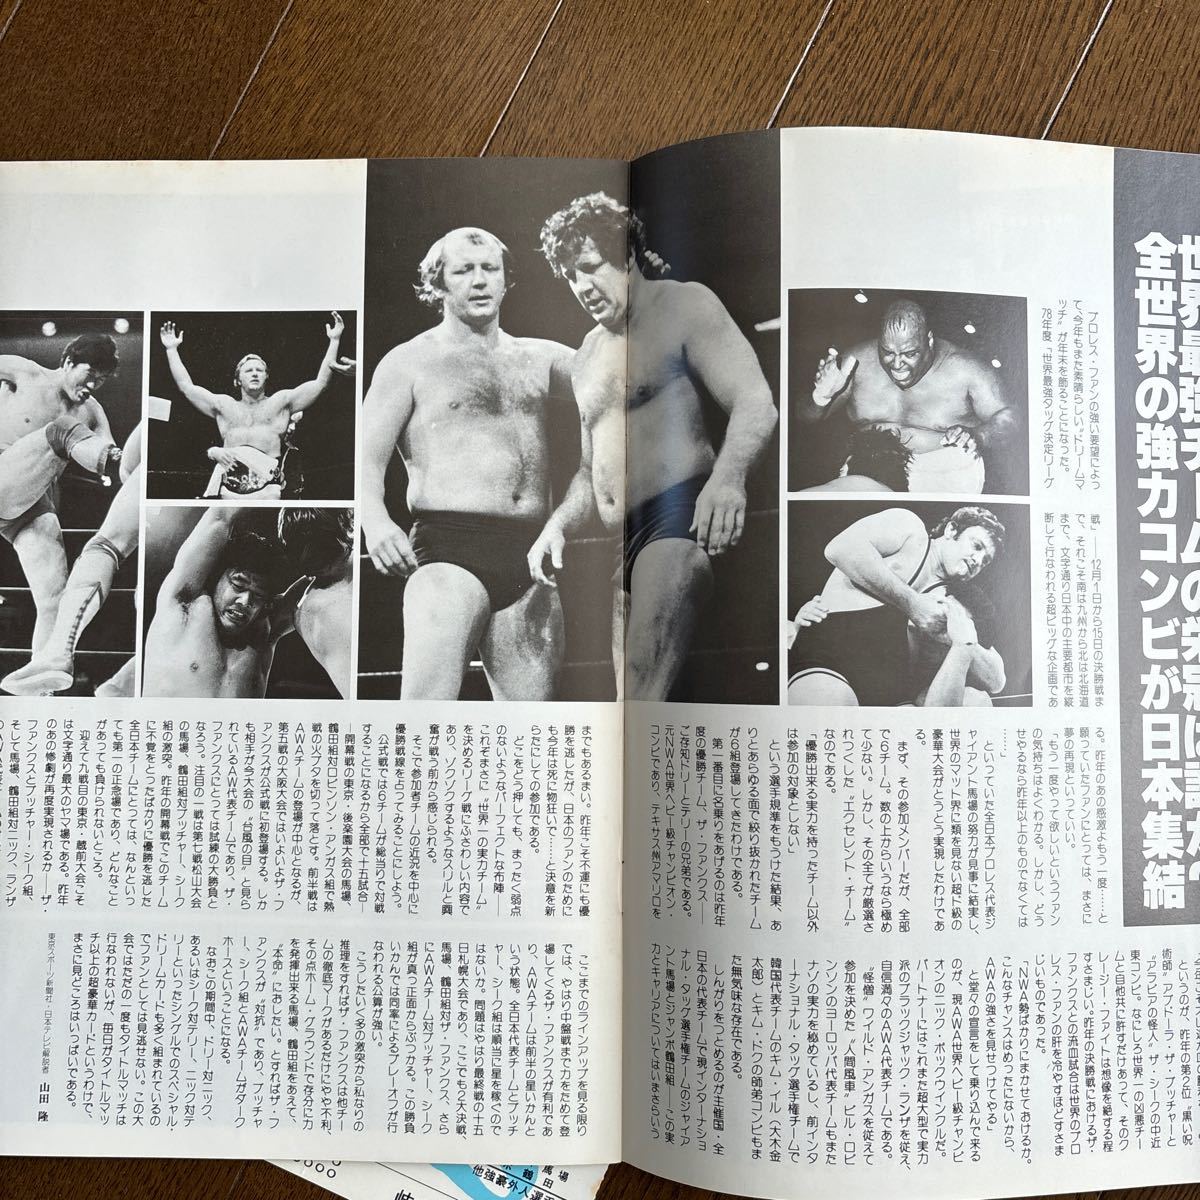 レア!全日本プロレス 78世界最強タッグ決定リーグ戦 岐阜大会パンフレットの画像4